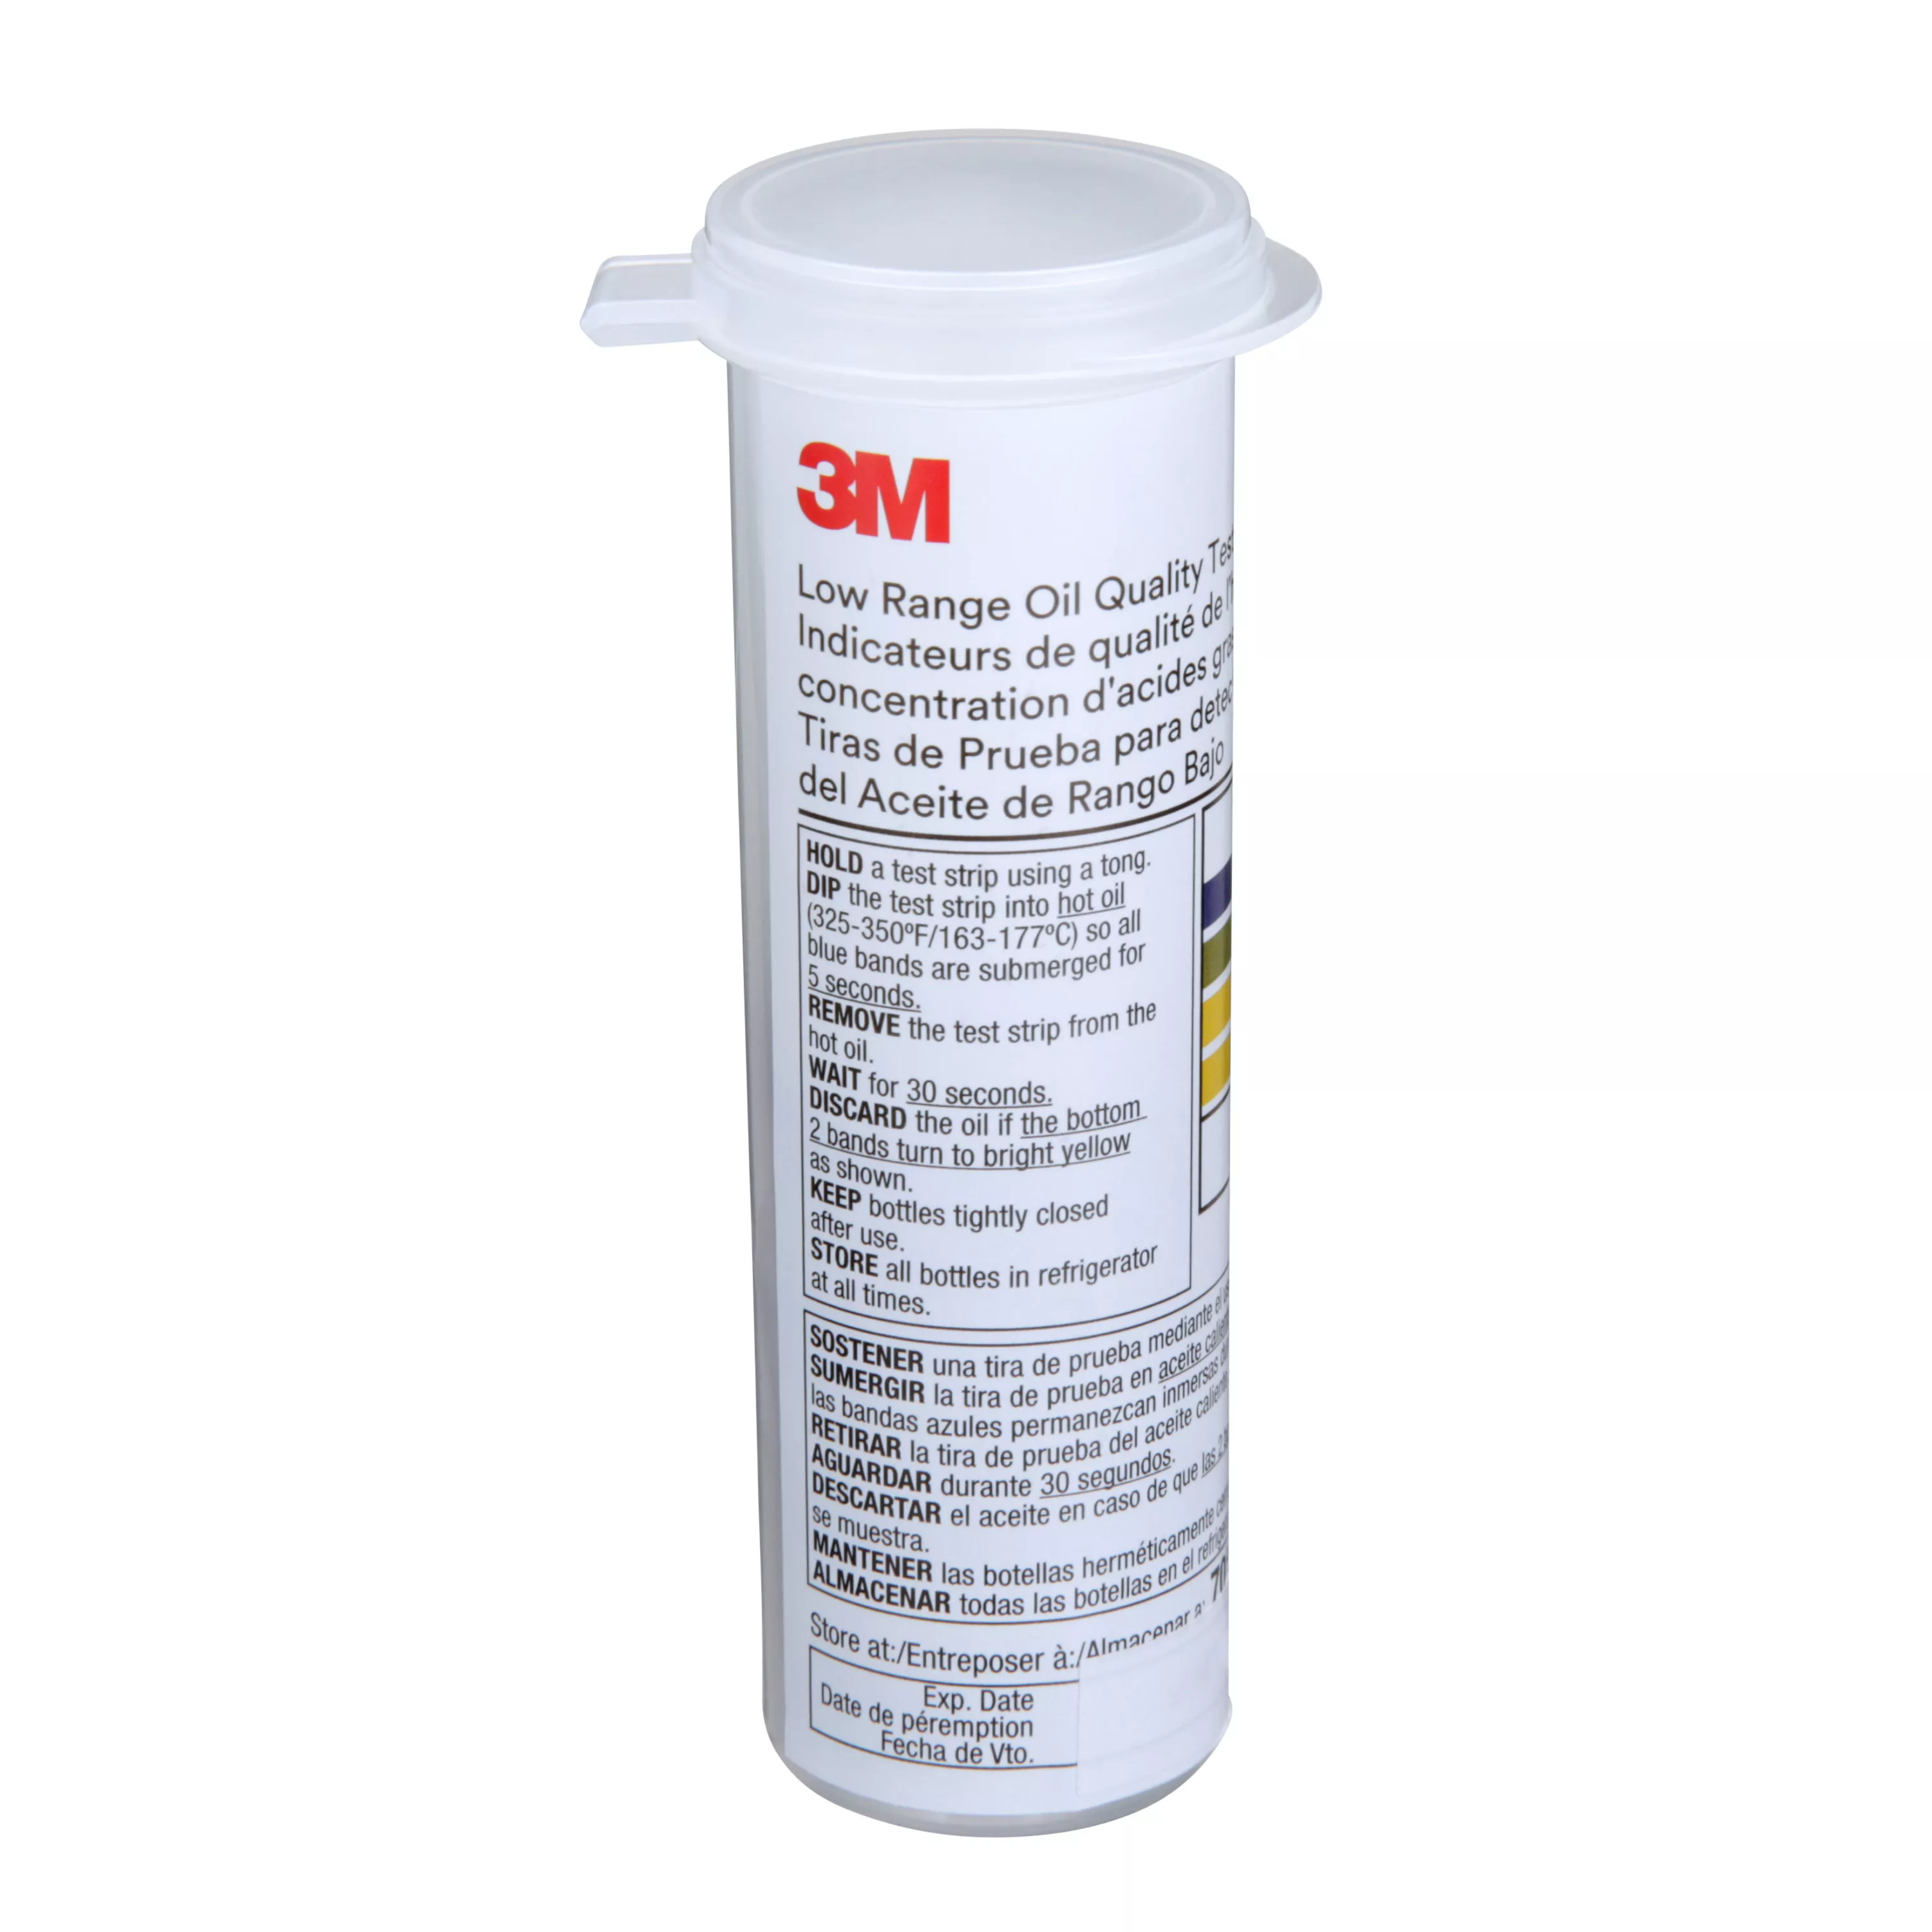 SKU 7000038381 | 3M™ Low Range Oil Quality Test Strips 1005